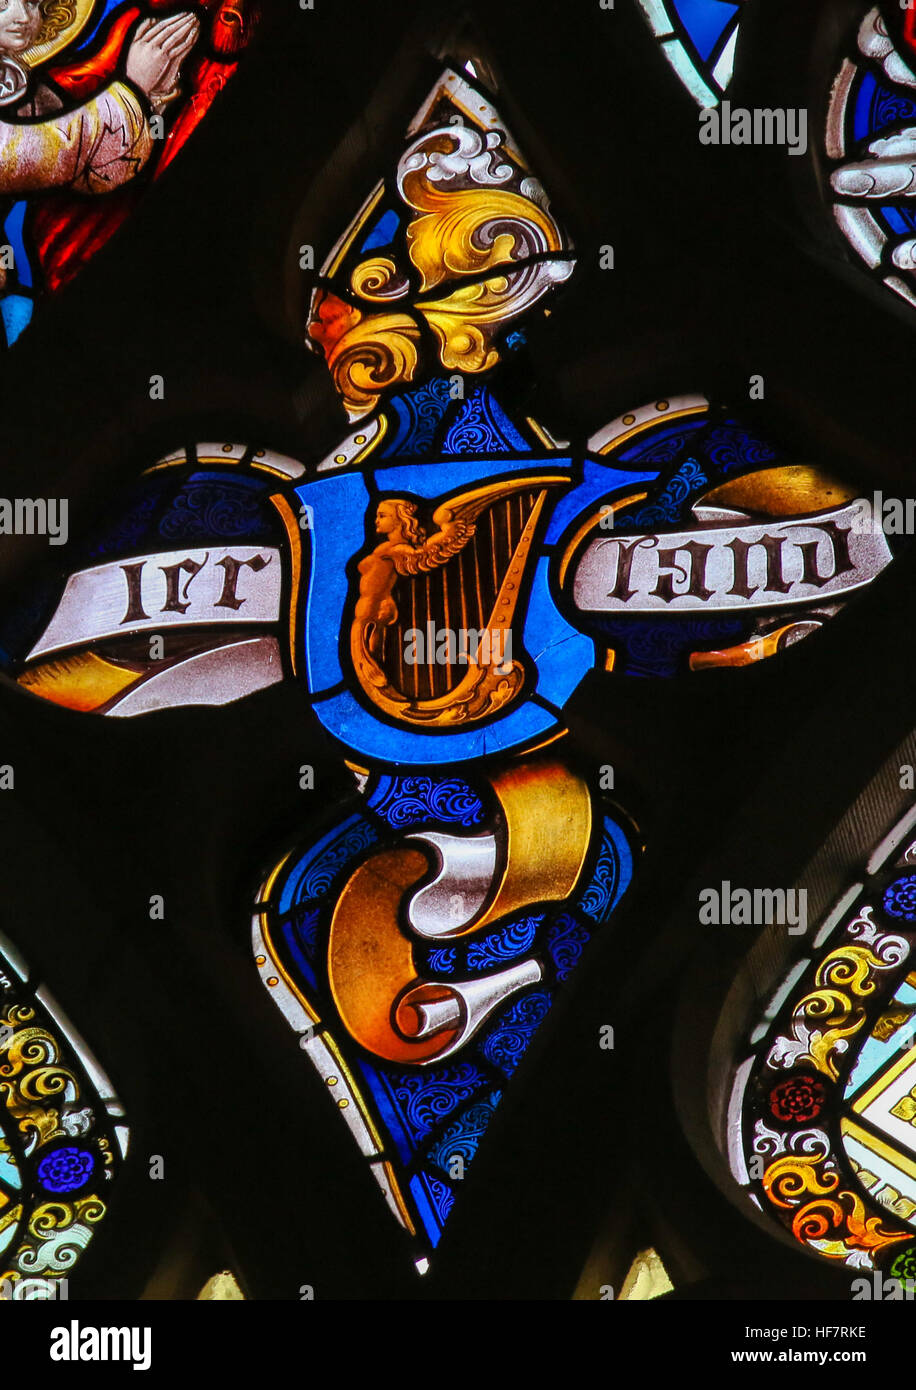 Glasmalerei Darstellung eine keltische Harfe als Symbol von Irland in der Kathedrale St. Bavo in Gent, Belgien. Stockfoto